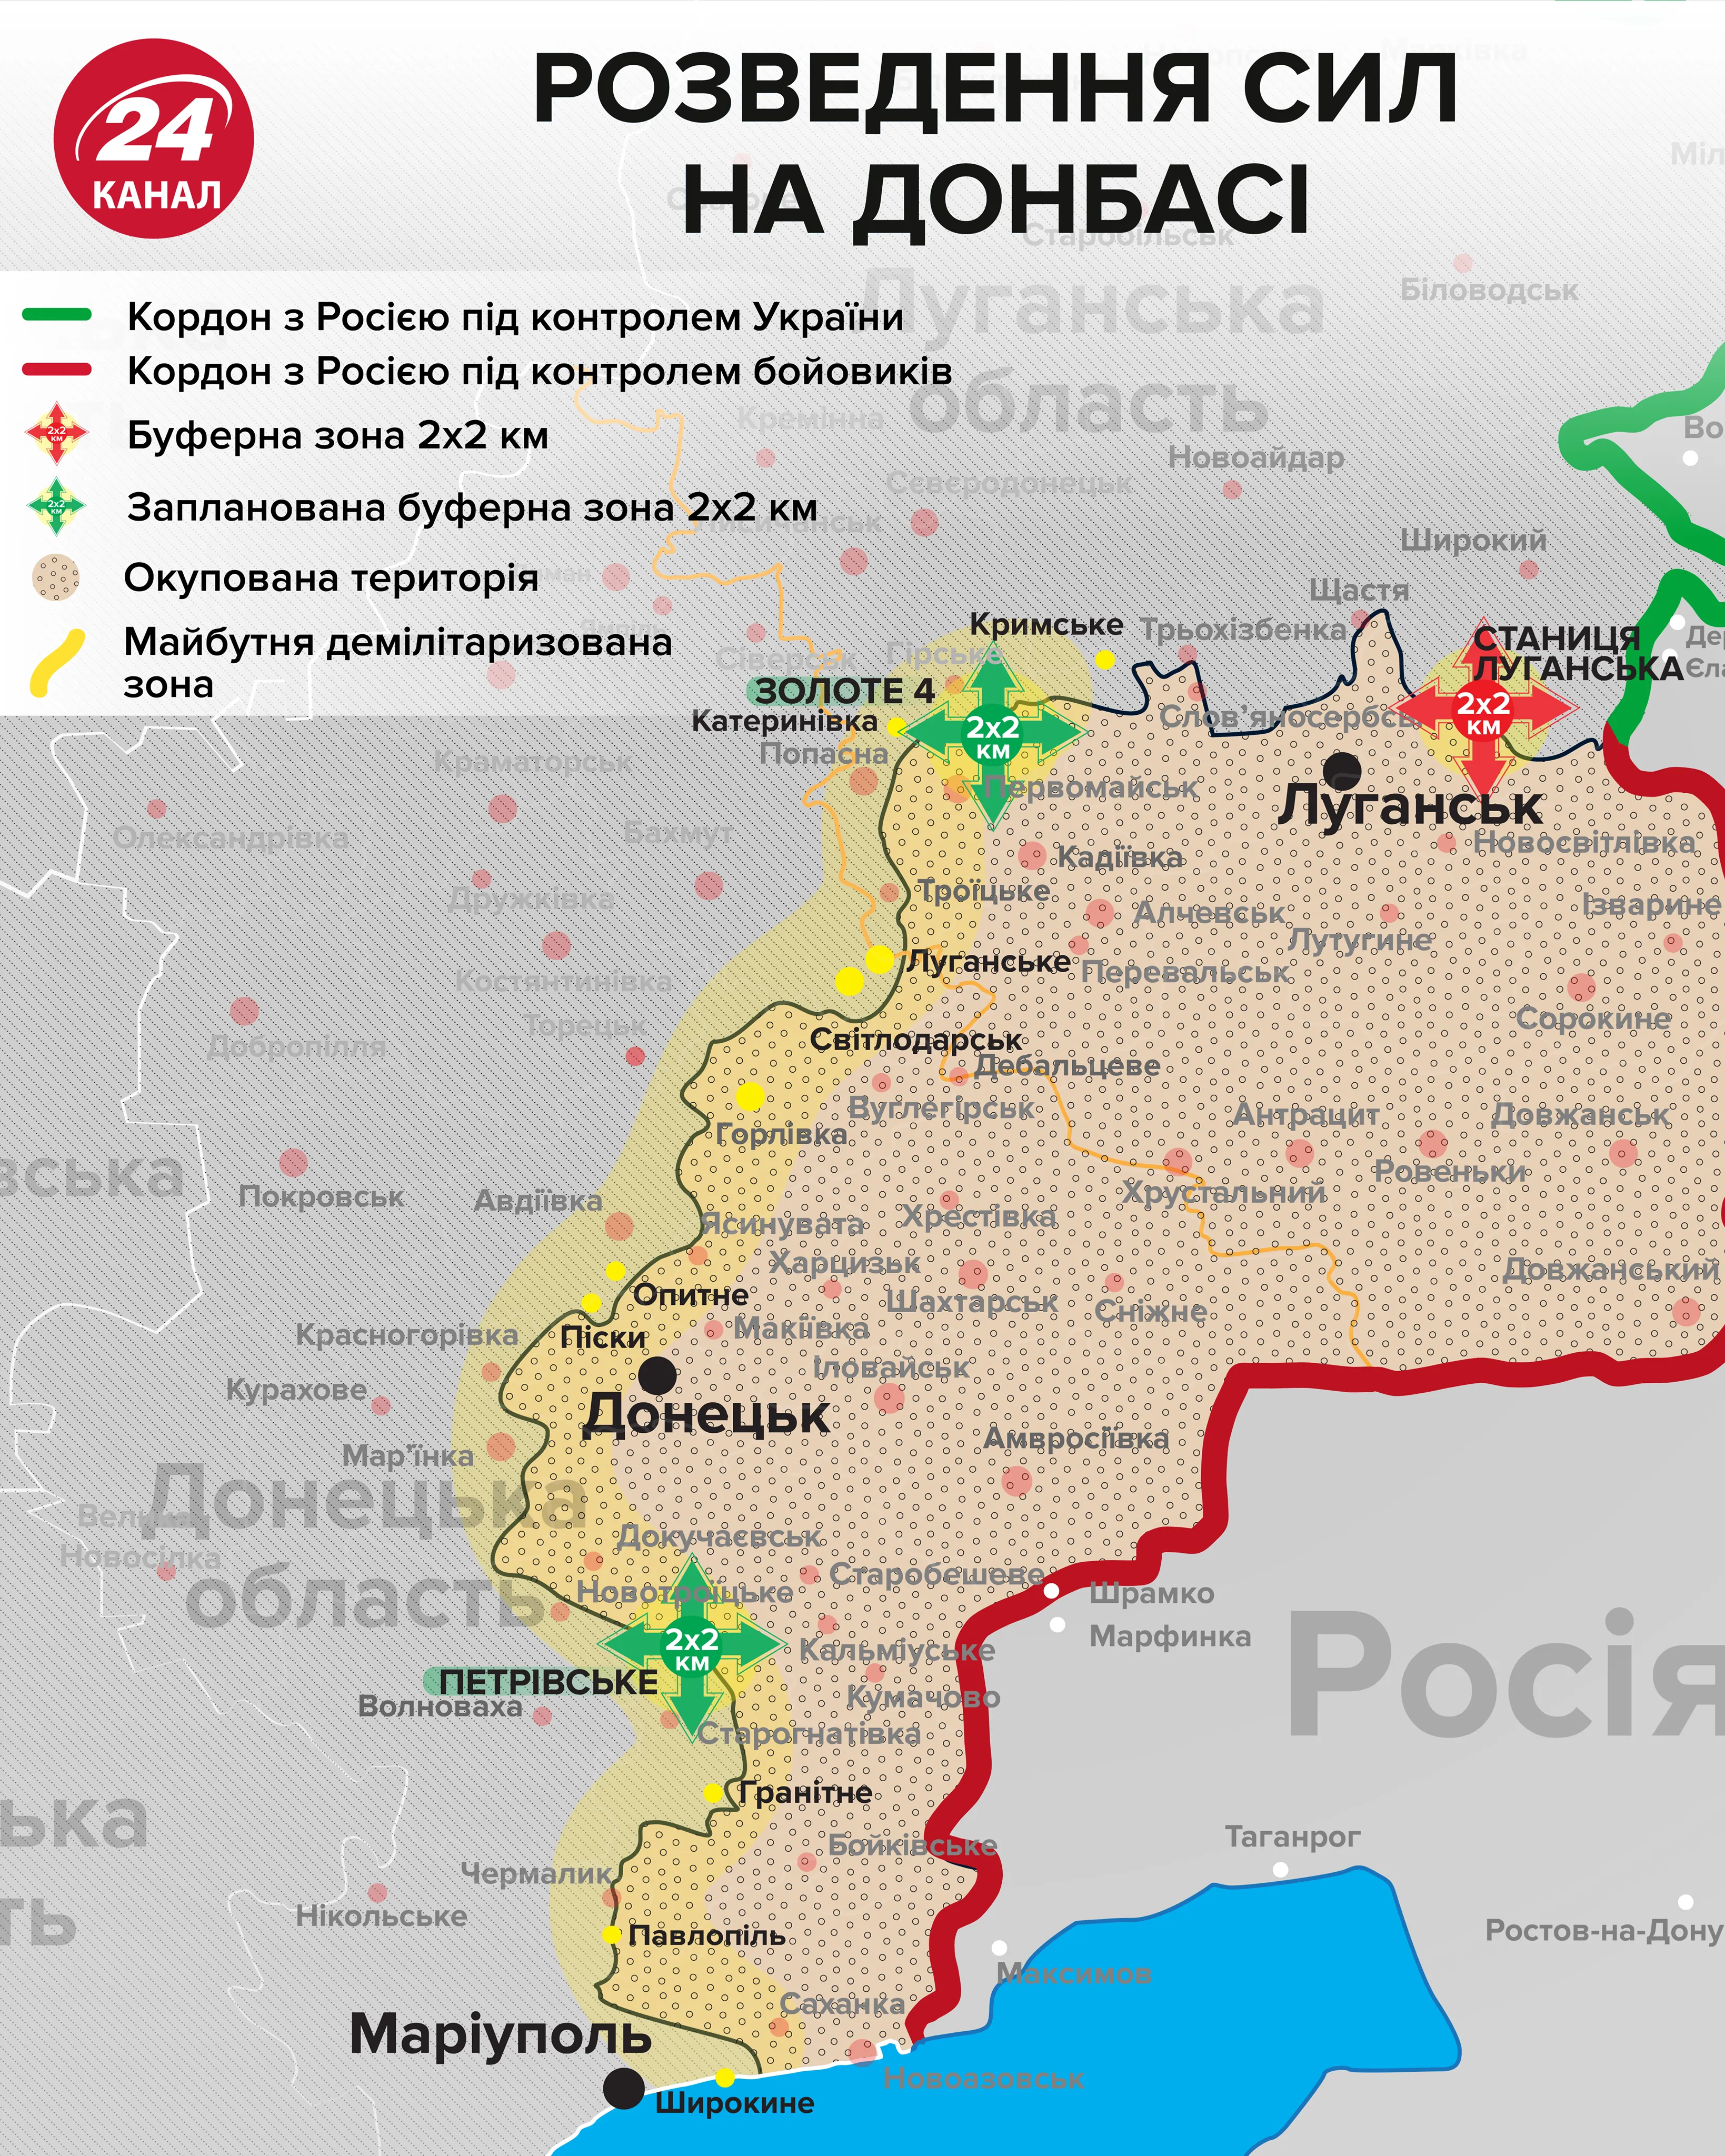 карта розведення військ на Донбасі розведення сил мапа